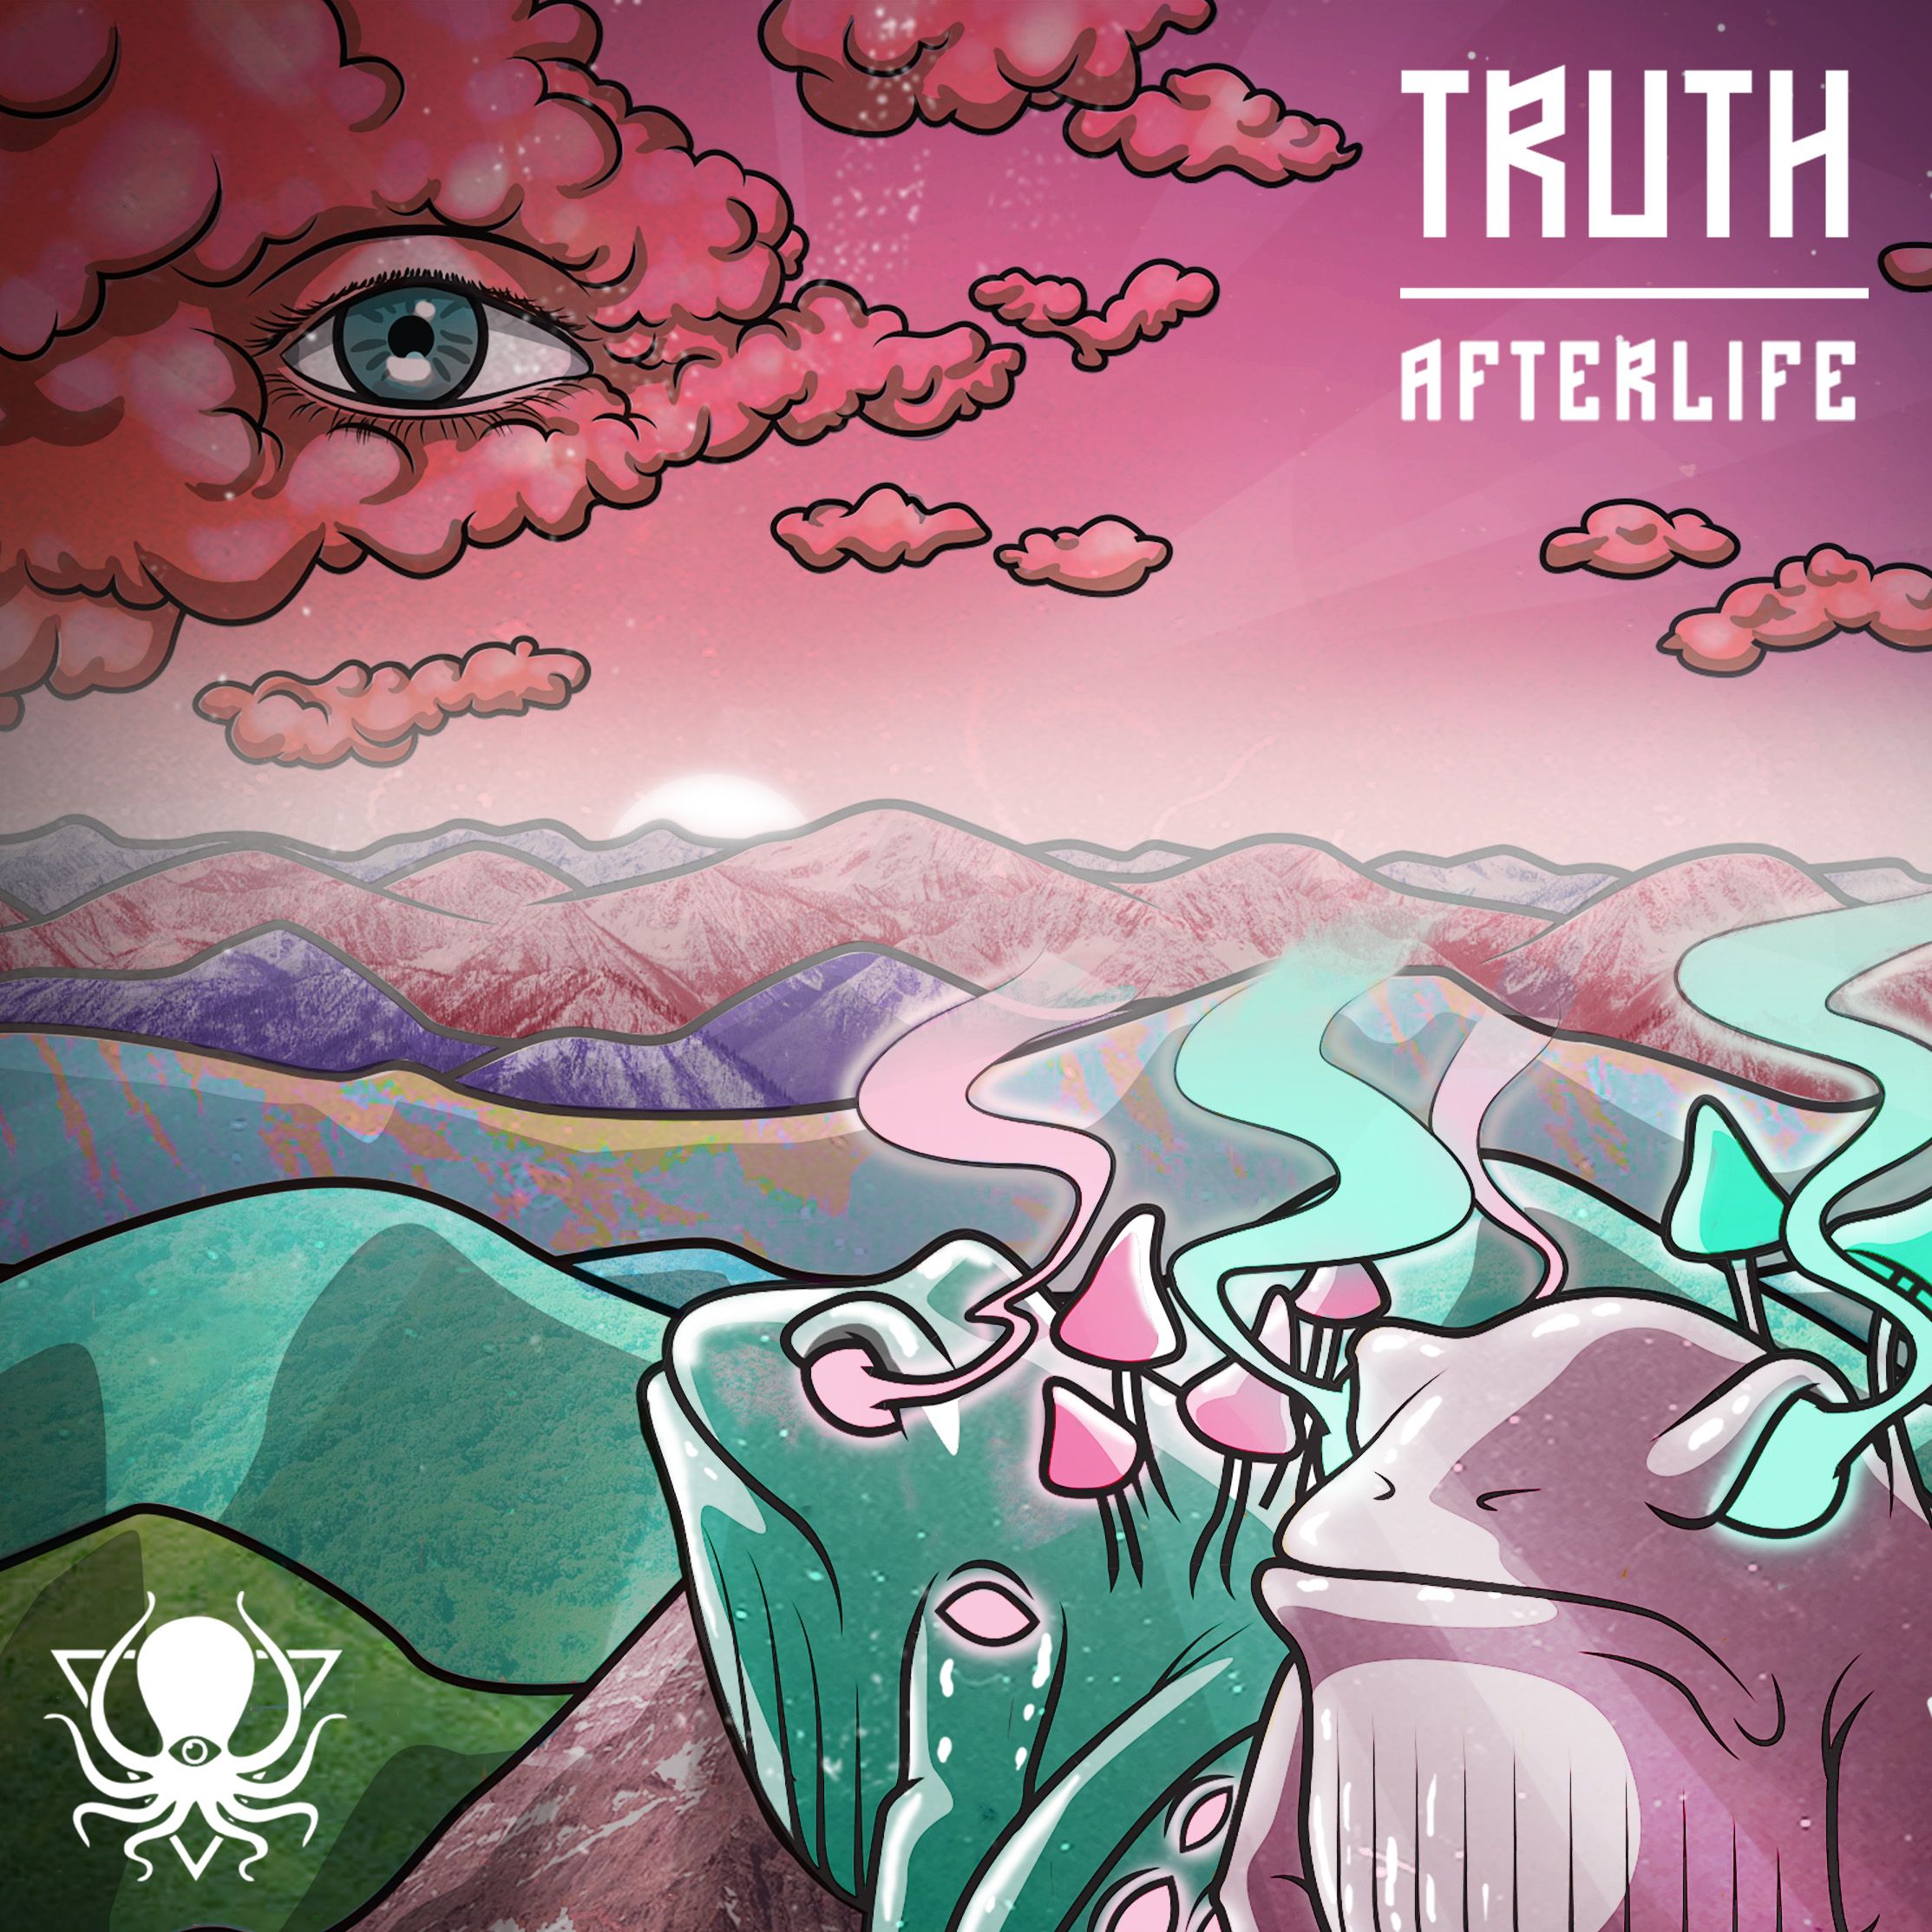 Sii mai Truth - Afterlife (DDD095)